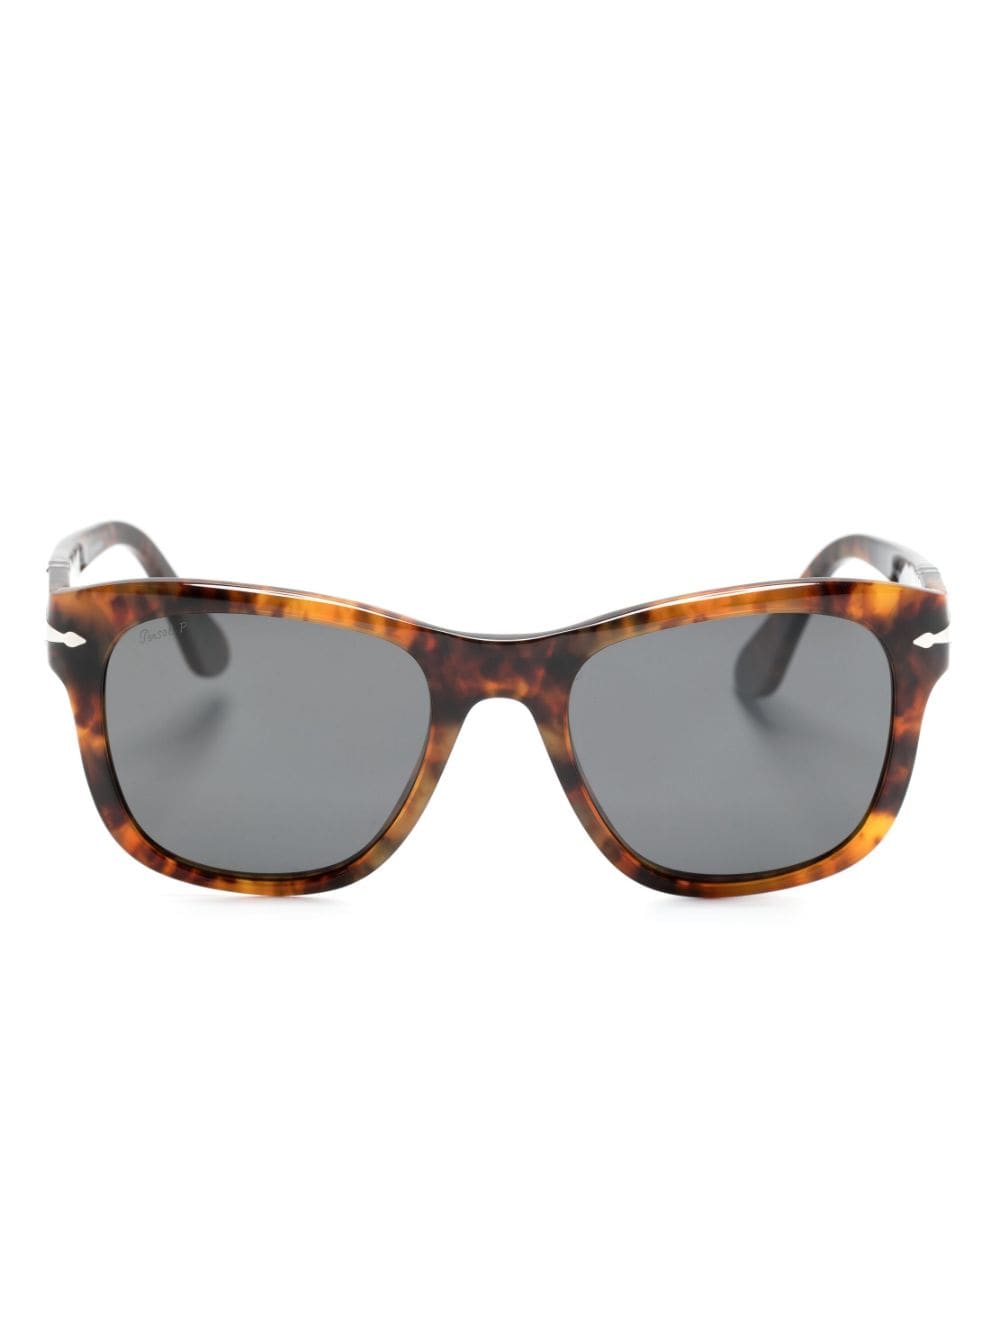 Persol 3313S square sunglasses - Brown von Persol